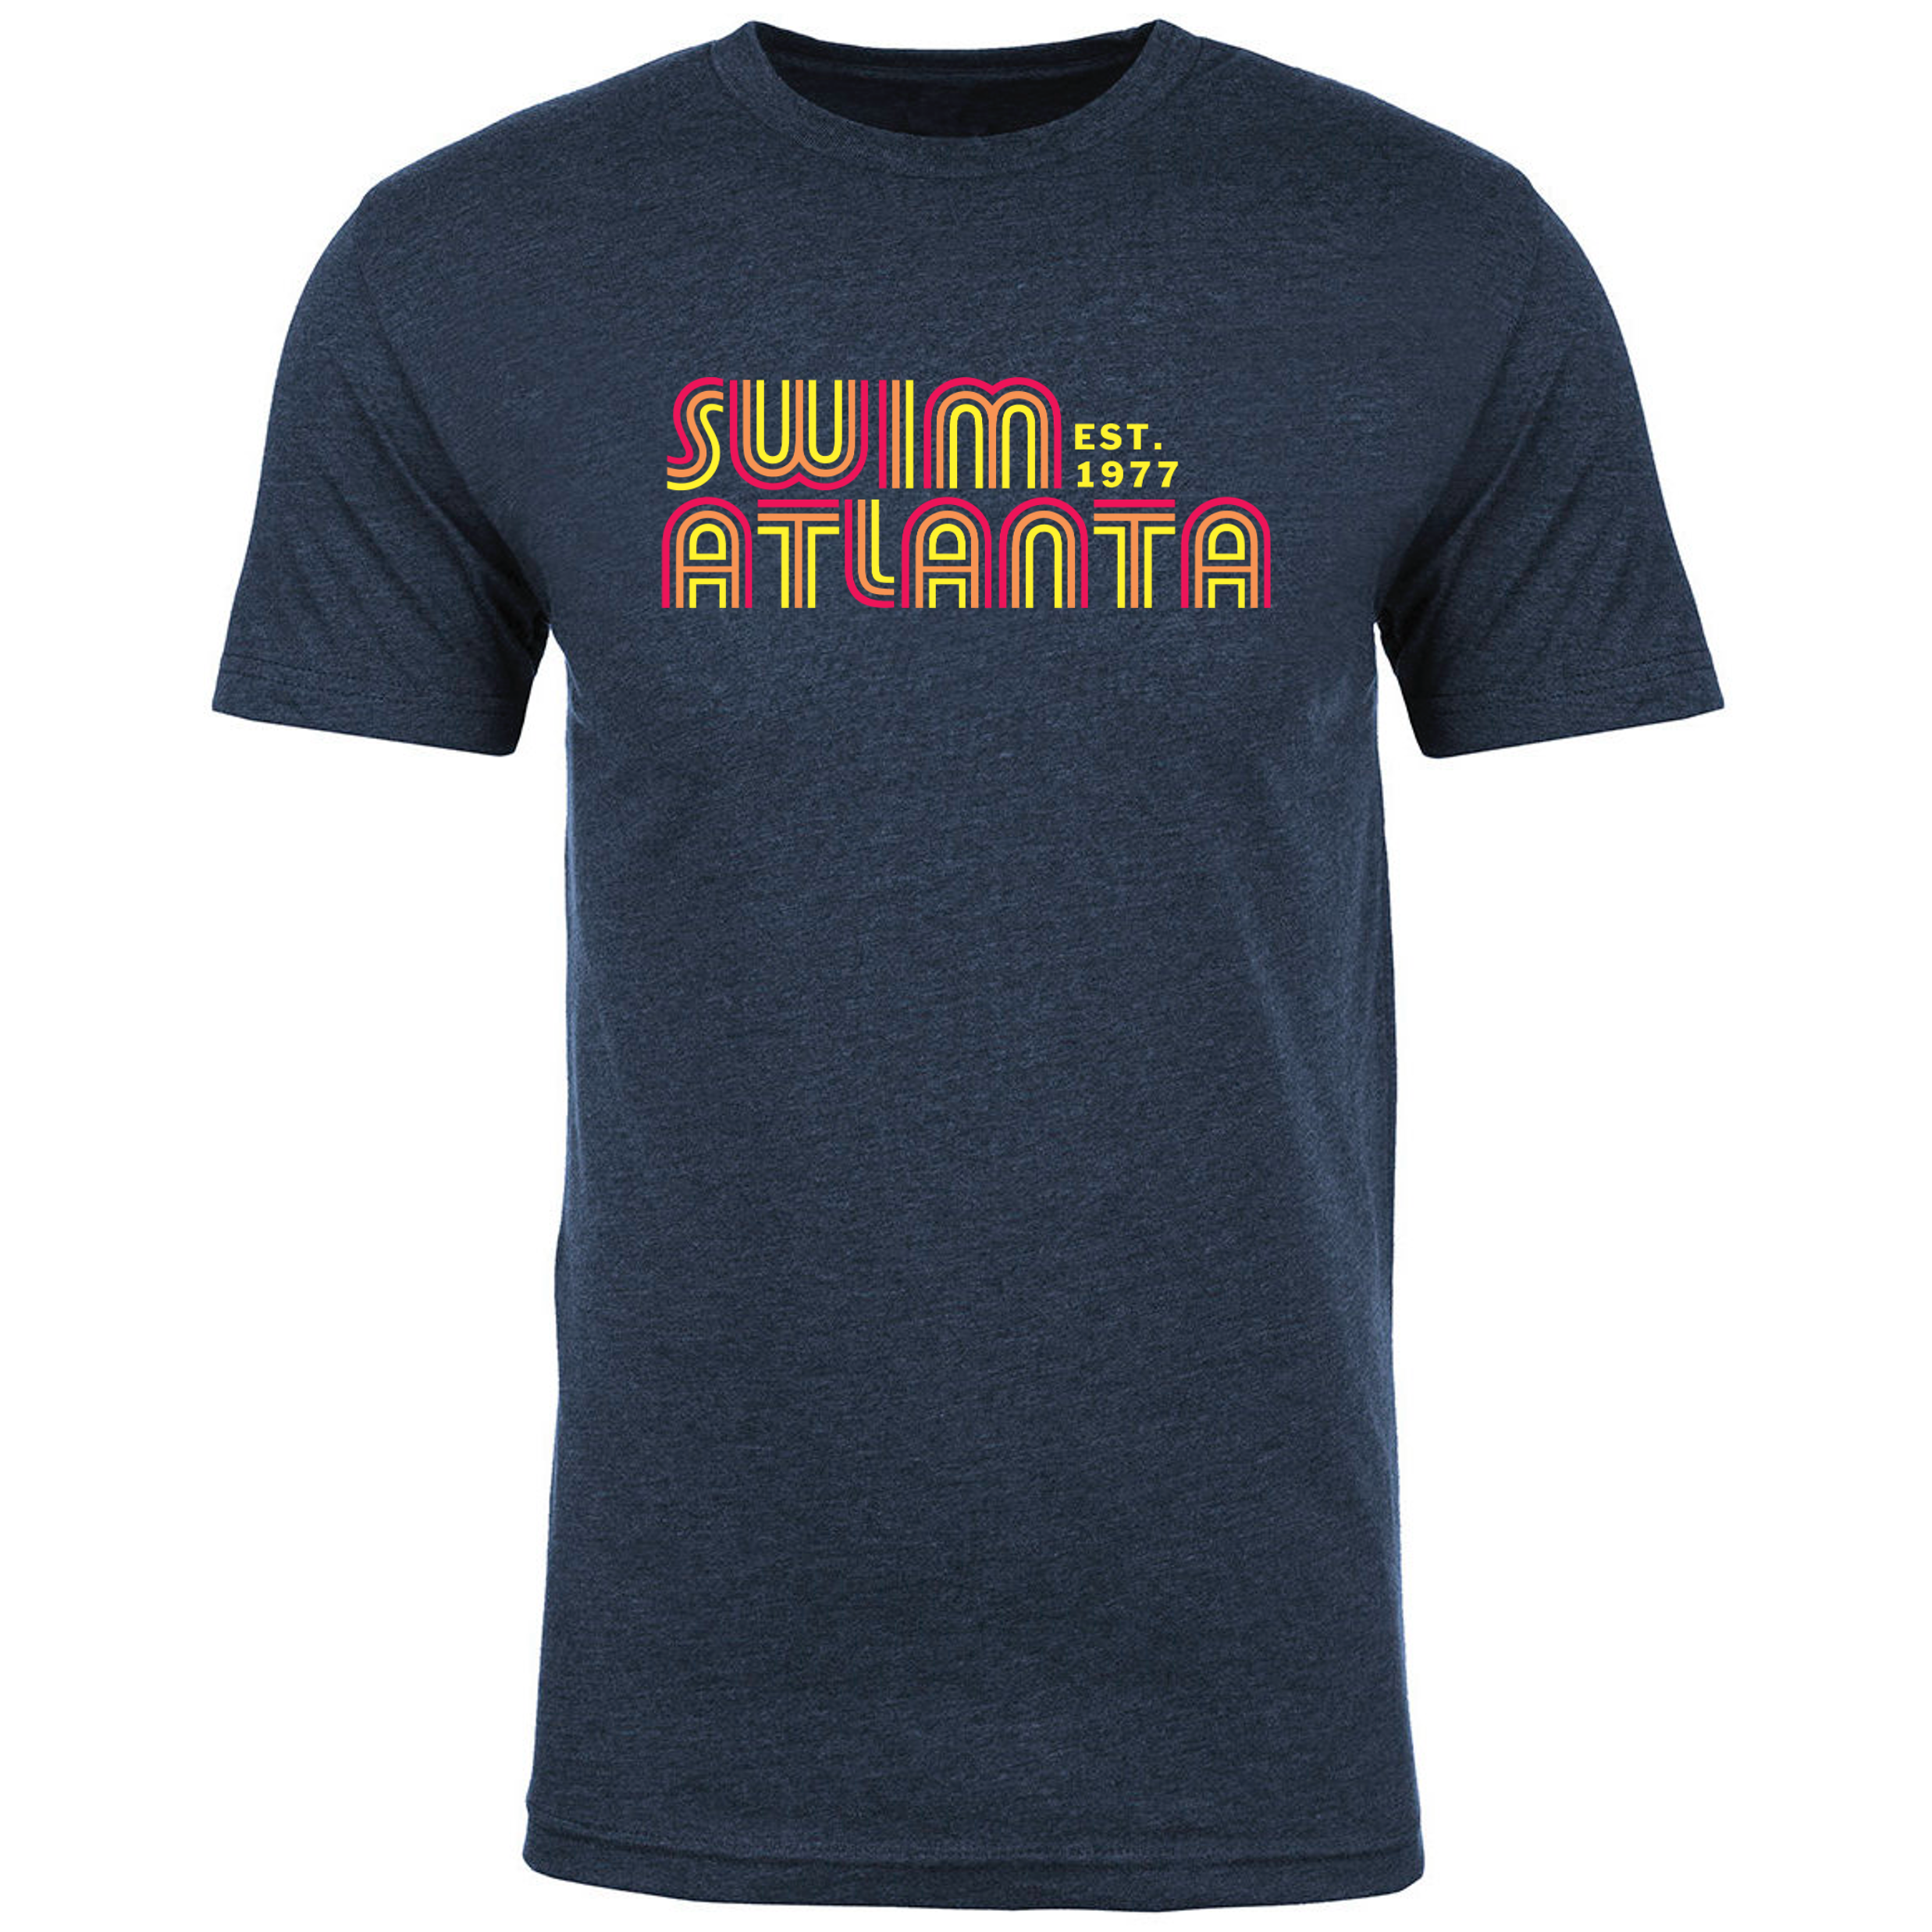 Team T-Shirt #1 - Swim Atlanta